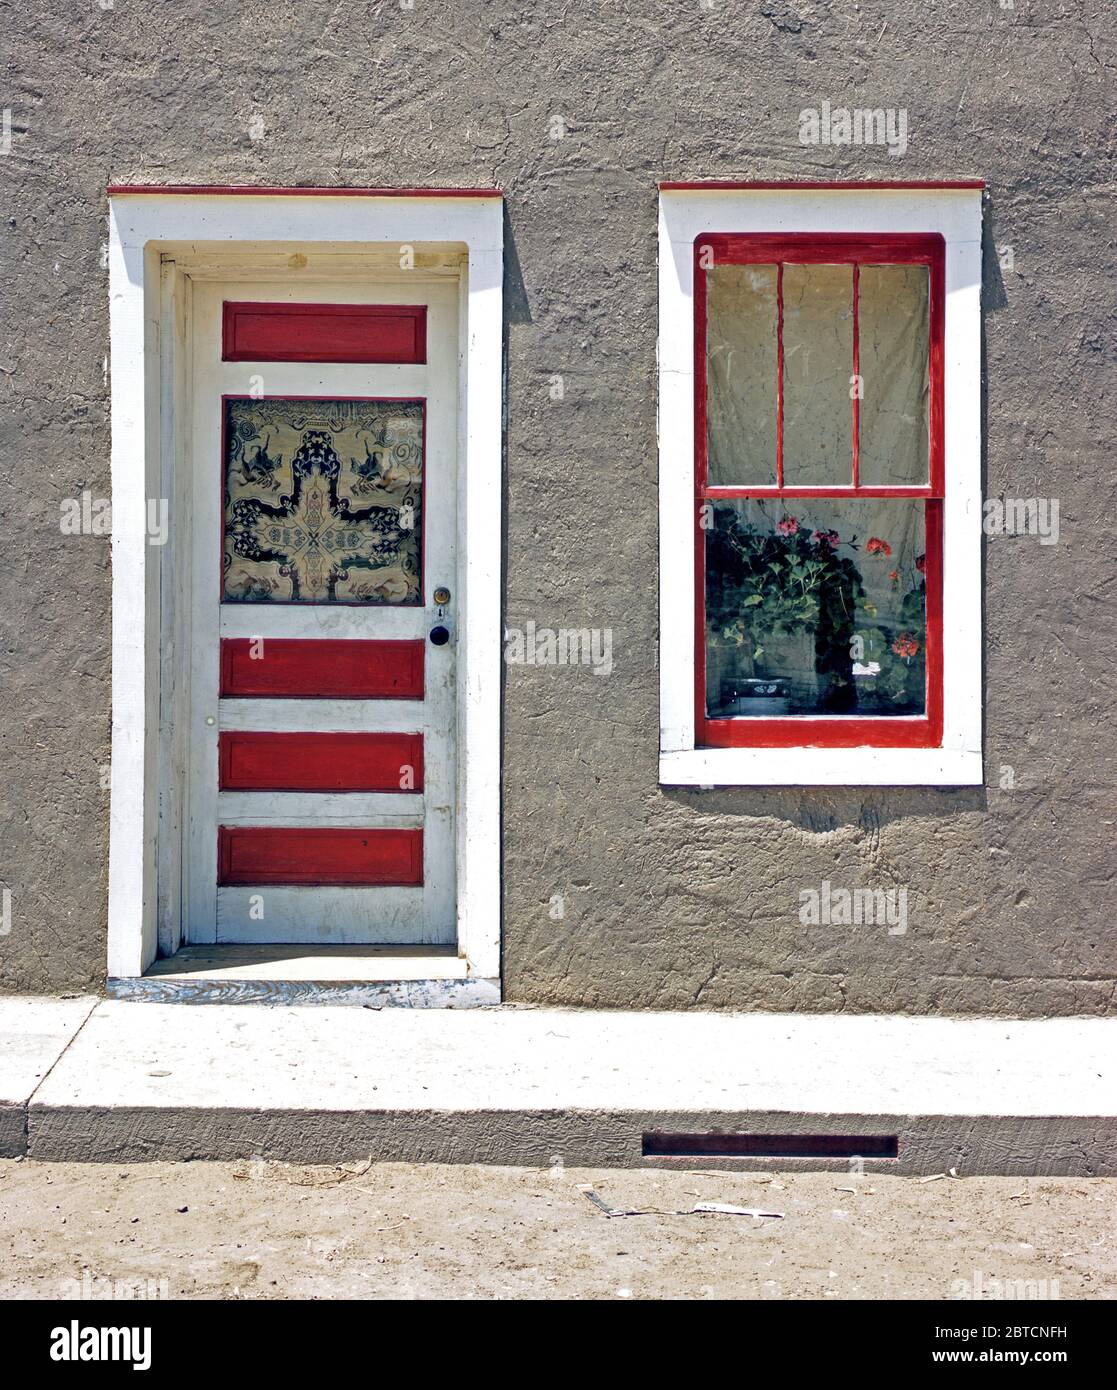 Porte et fenêtre dans une maison hispano-américaine, Noone, Nouveau Mexique Juillet 1940 Banque D'Images